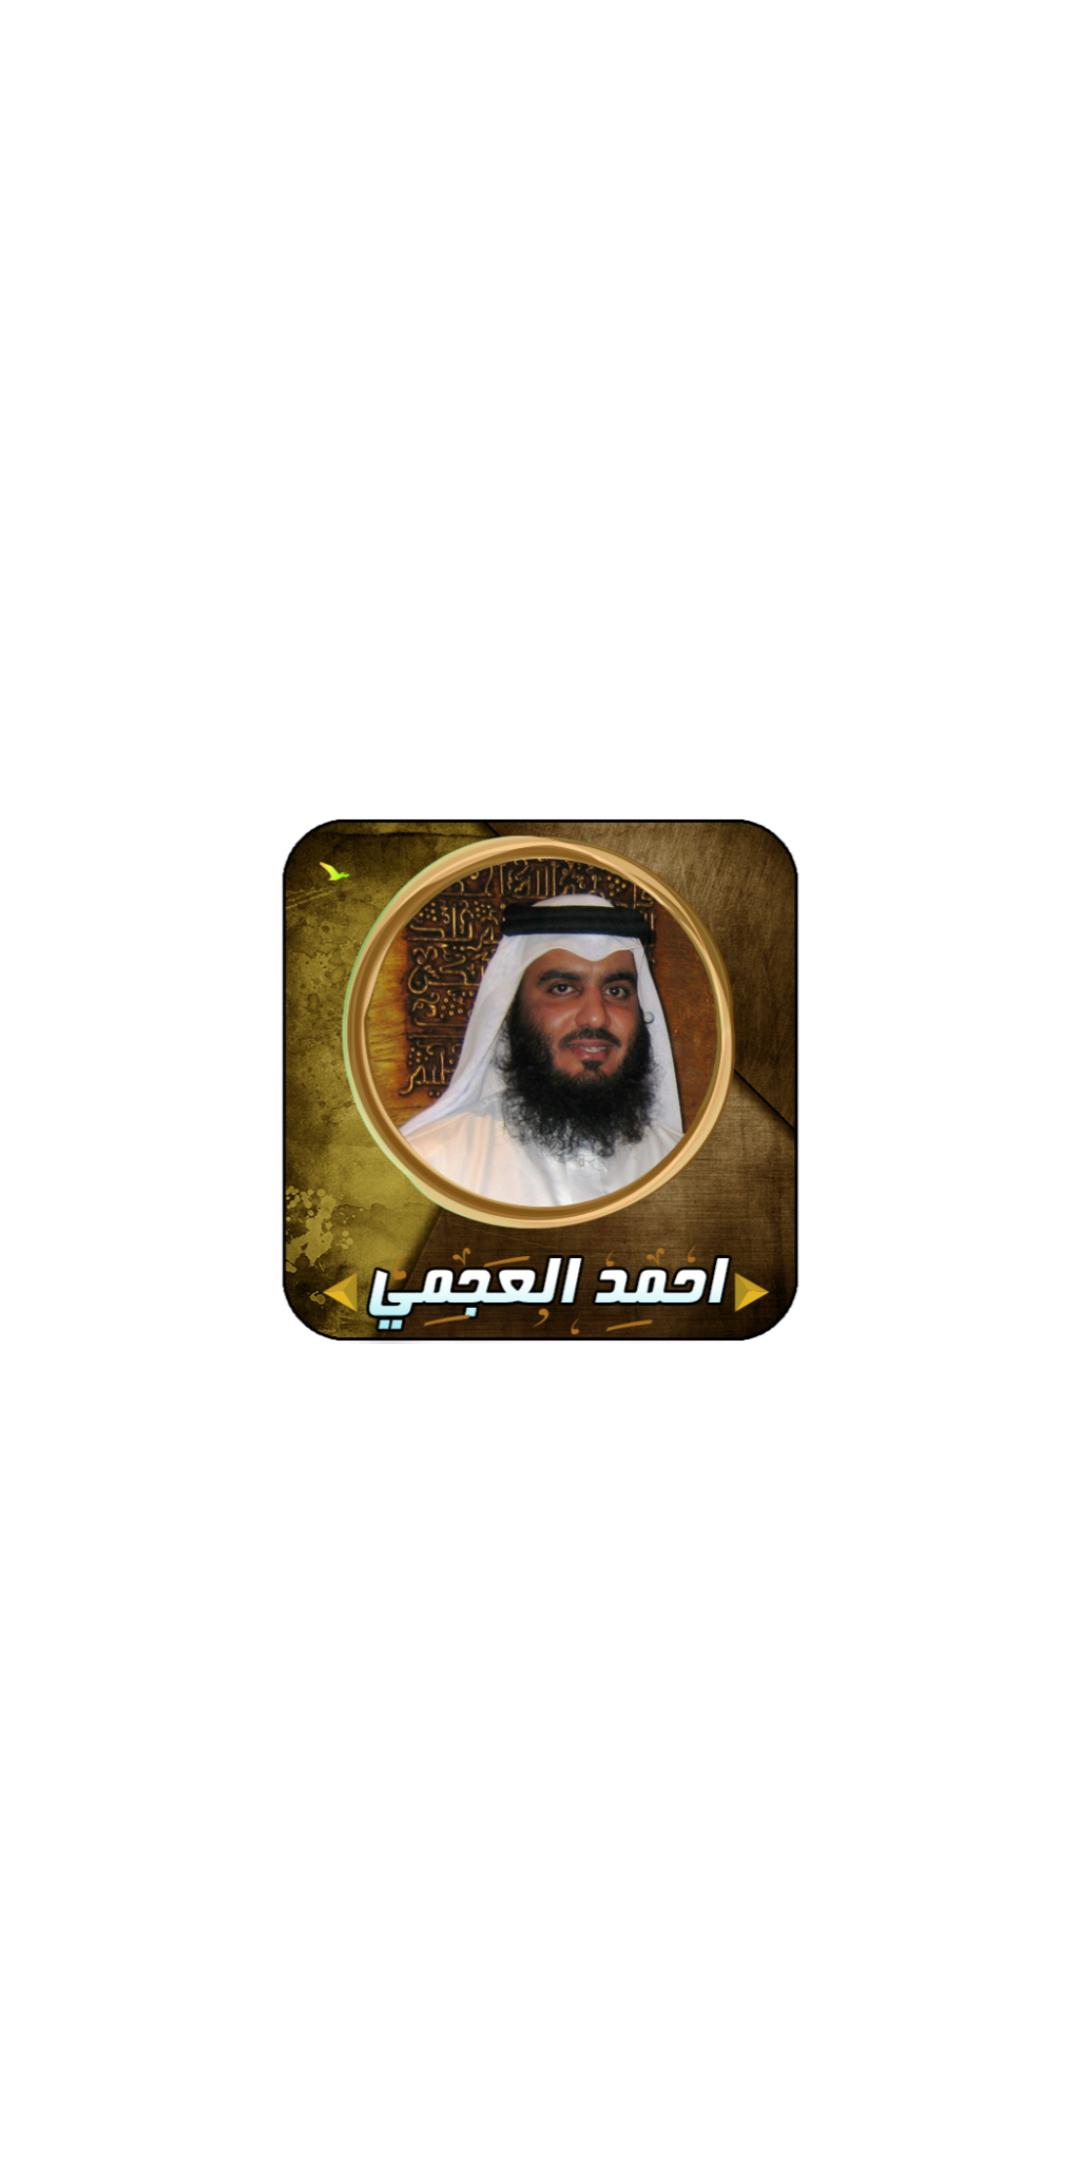 القران الكريم بصوت الشيخ احمد العجمي mp3 APK für Android herunterladen